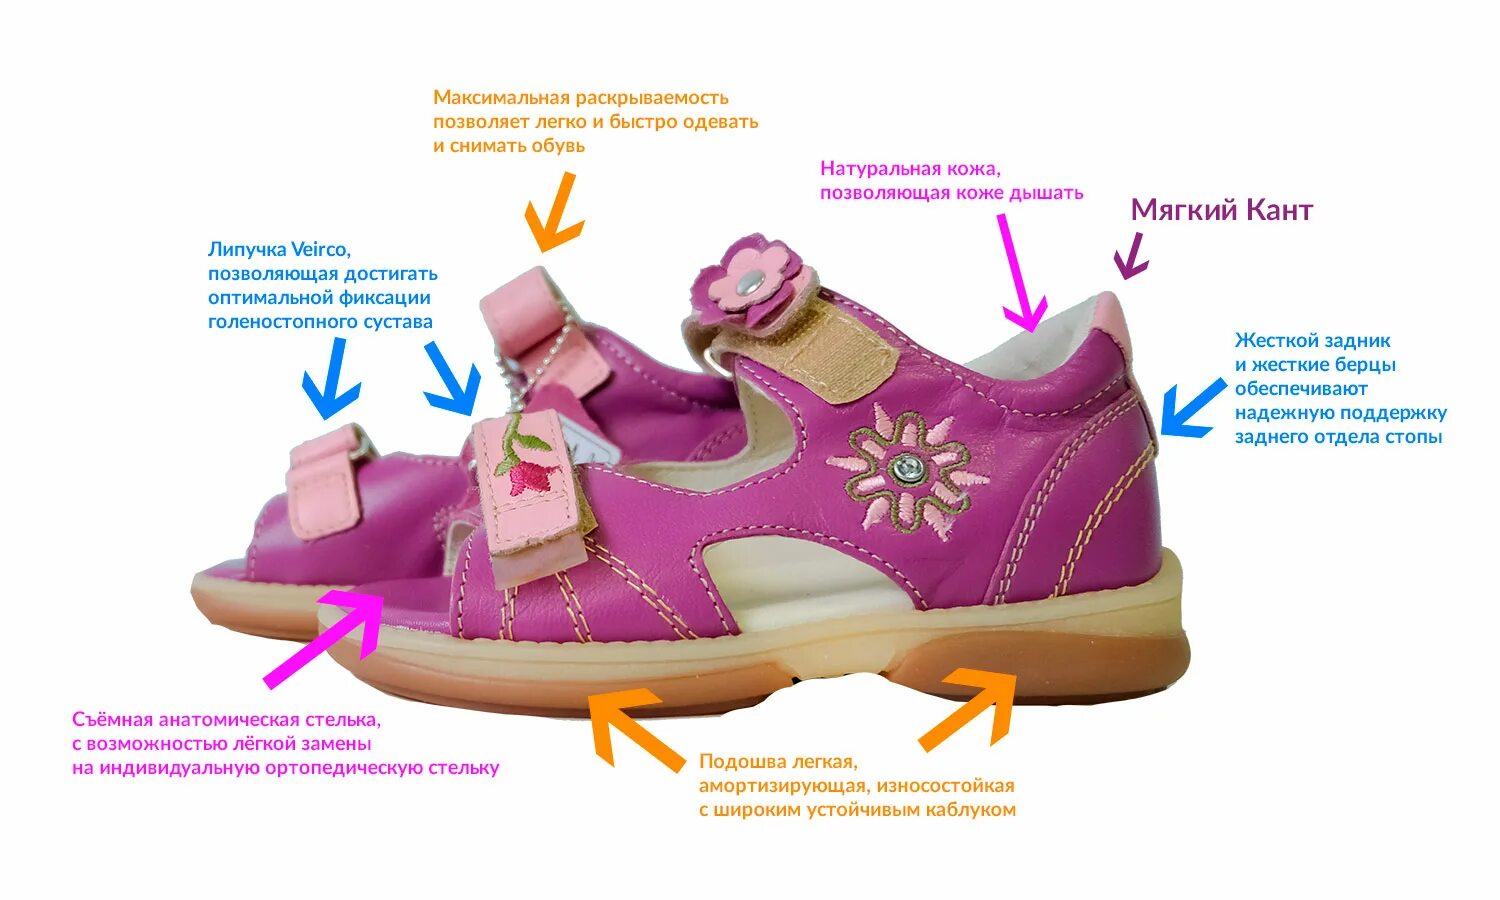 Правильная обувь для детей. Детская ортопедическая обувь. Правильная ортопедическая обувь. Ортопедические обув для детей. Как правильно подобрать обувь ребенку